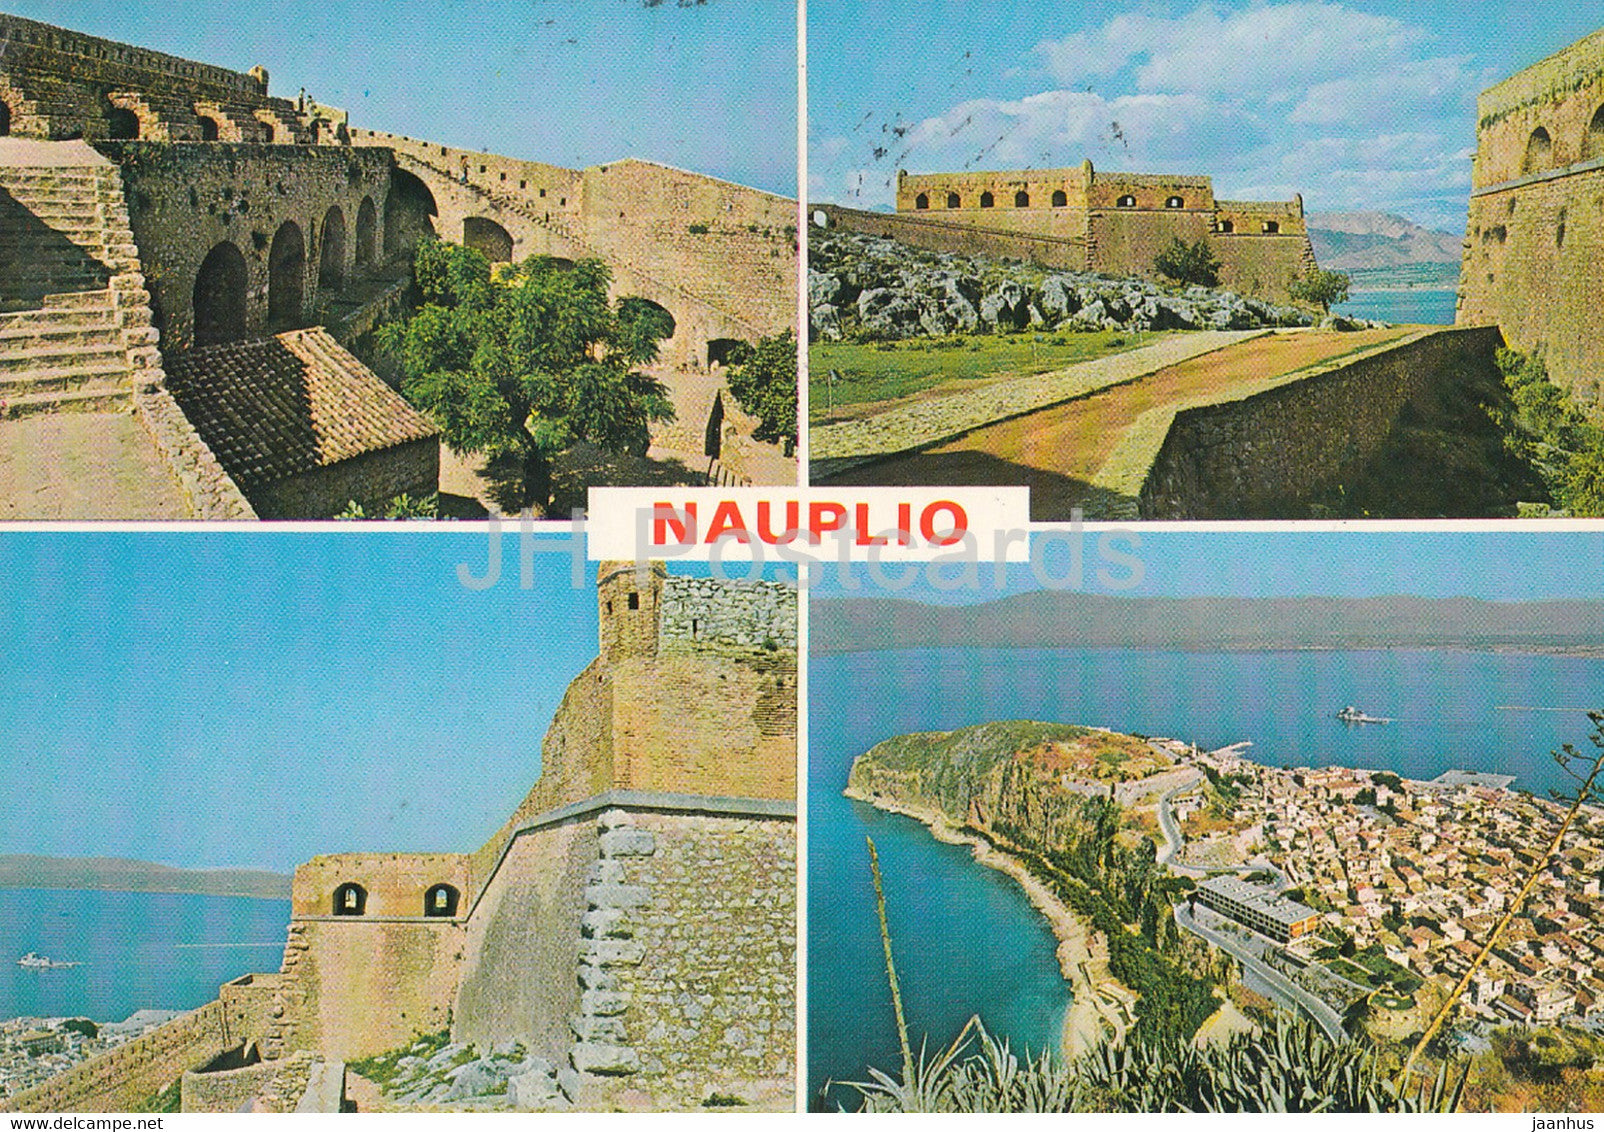 Nauplio - Nauplia - Nafplion - The Castle of Palamidi - multiview - 1981 - Greece - used - JH Postcards